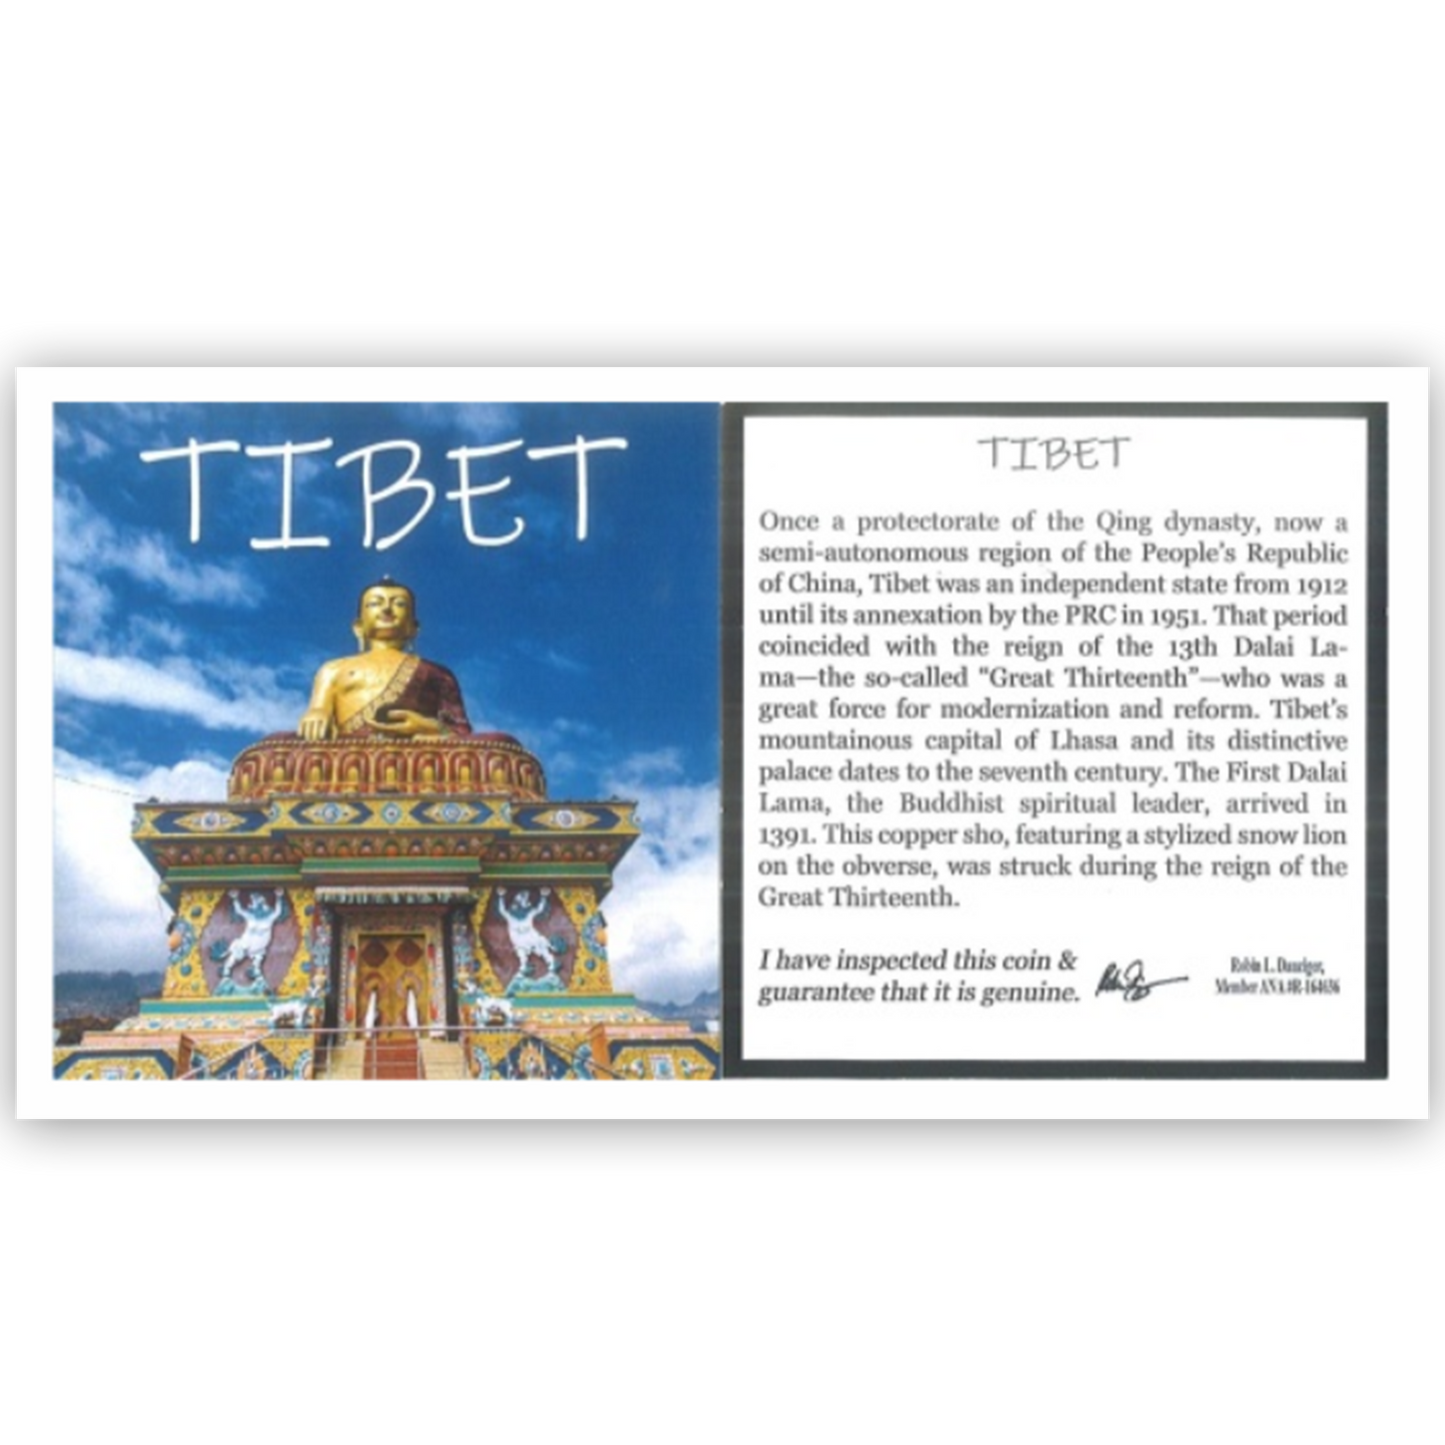 Tibet mini album